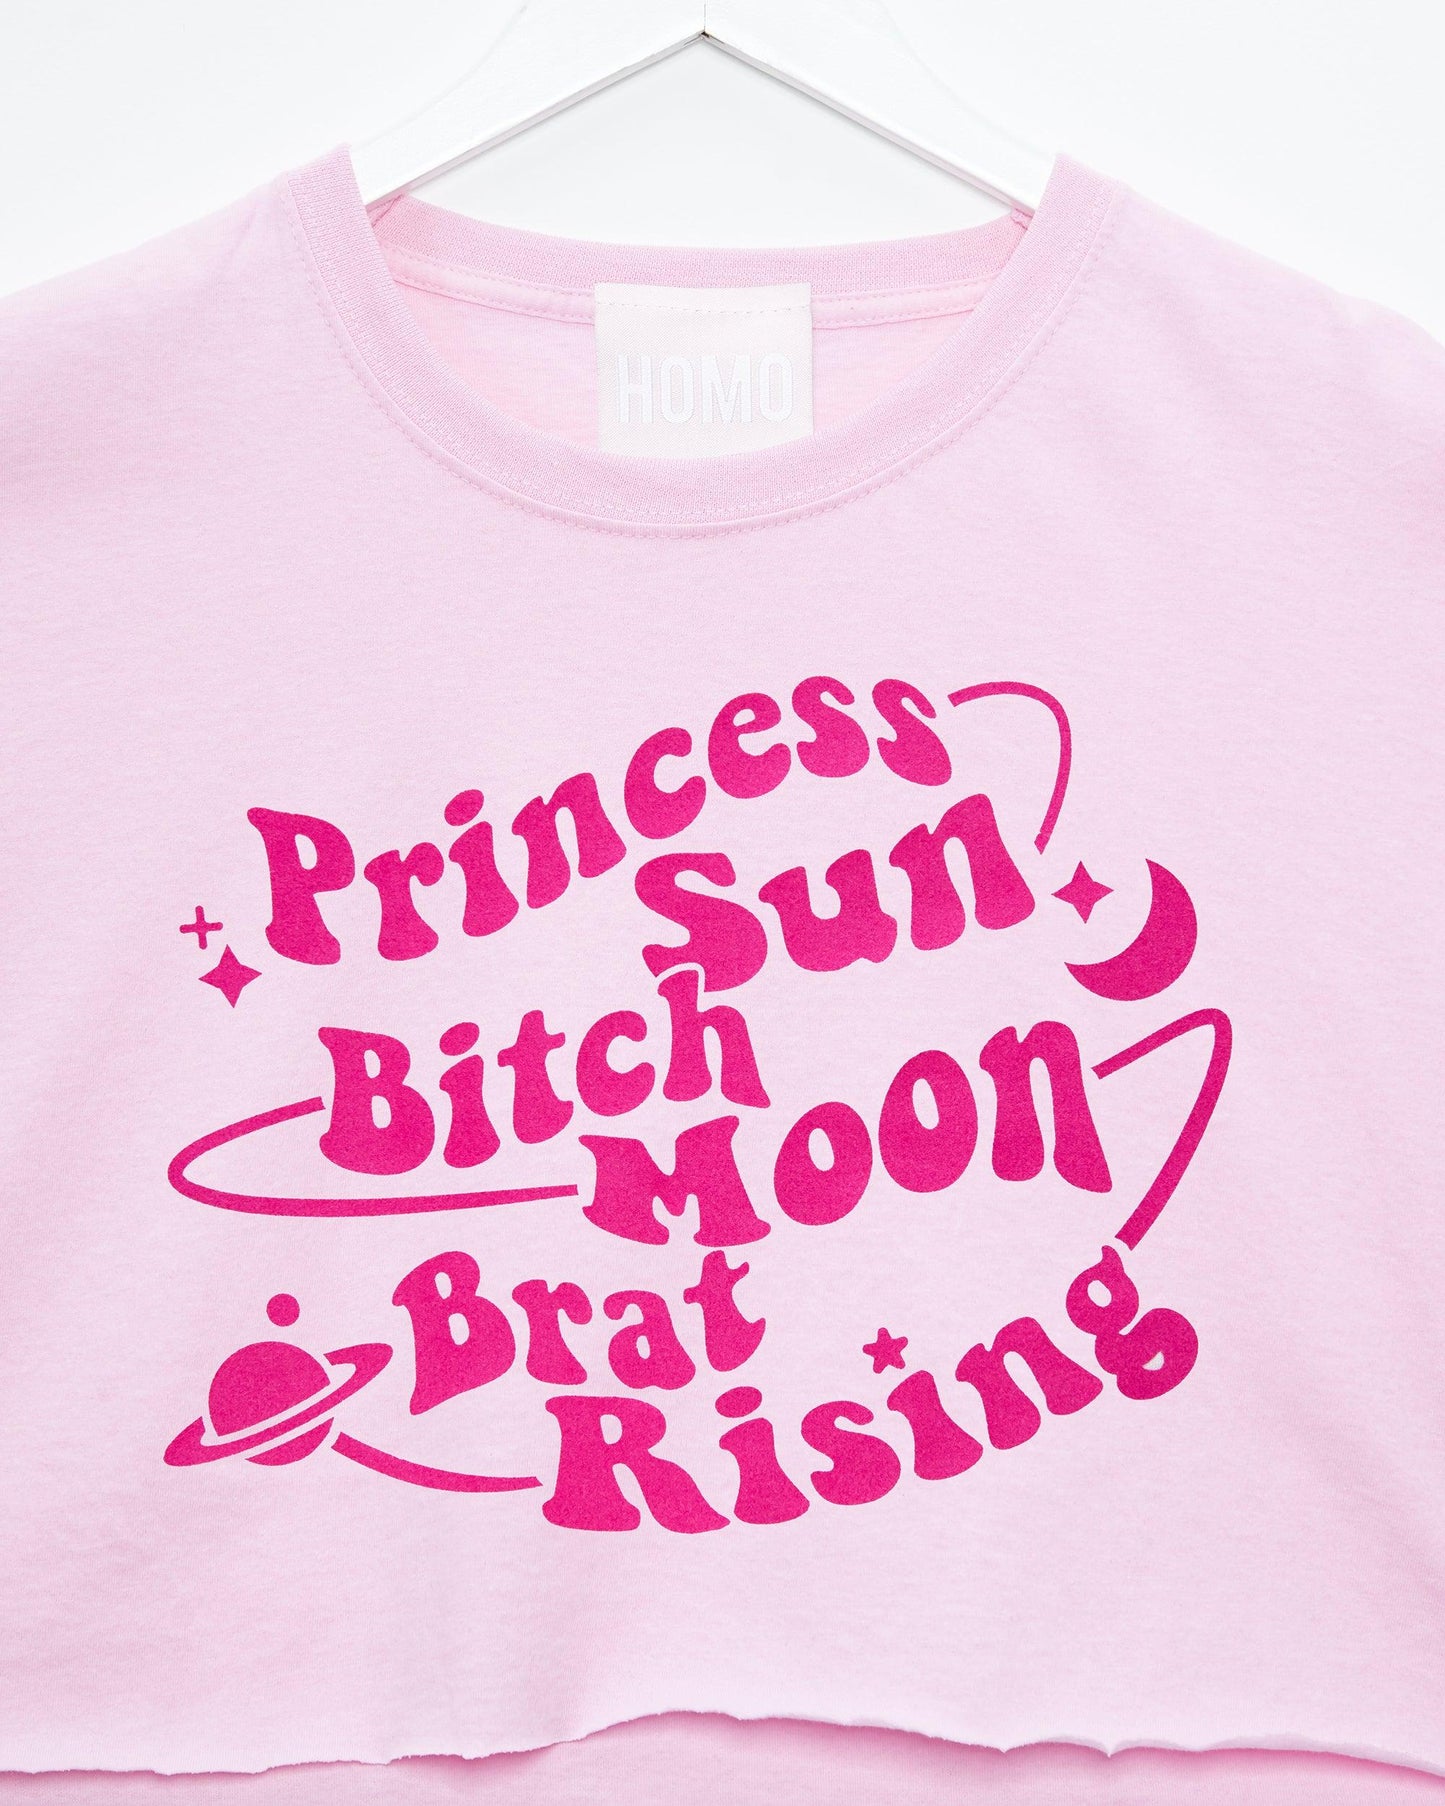 Princess sun, bitch moon, brat rising. Pink flock on pink - mens crop top.